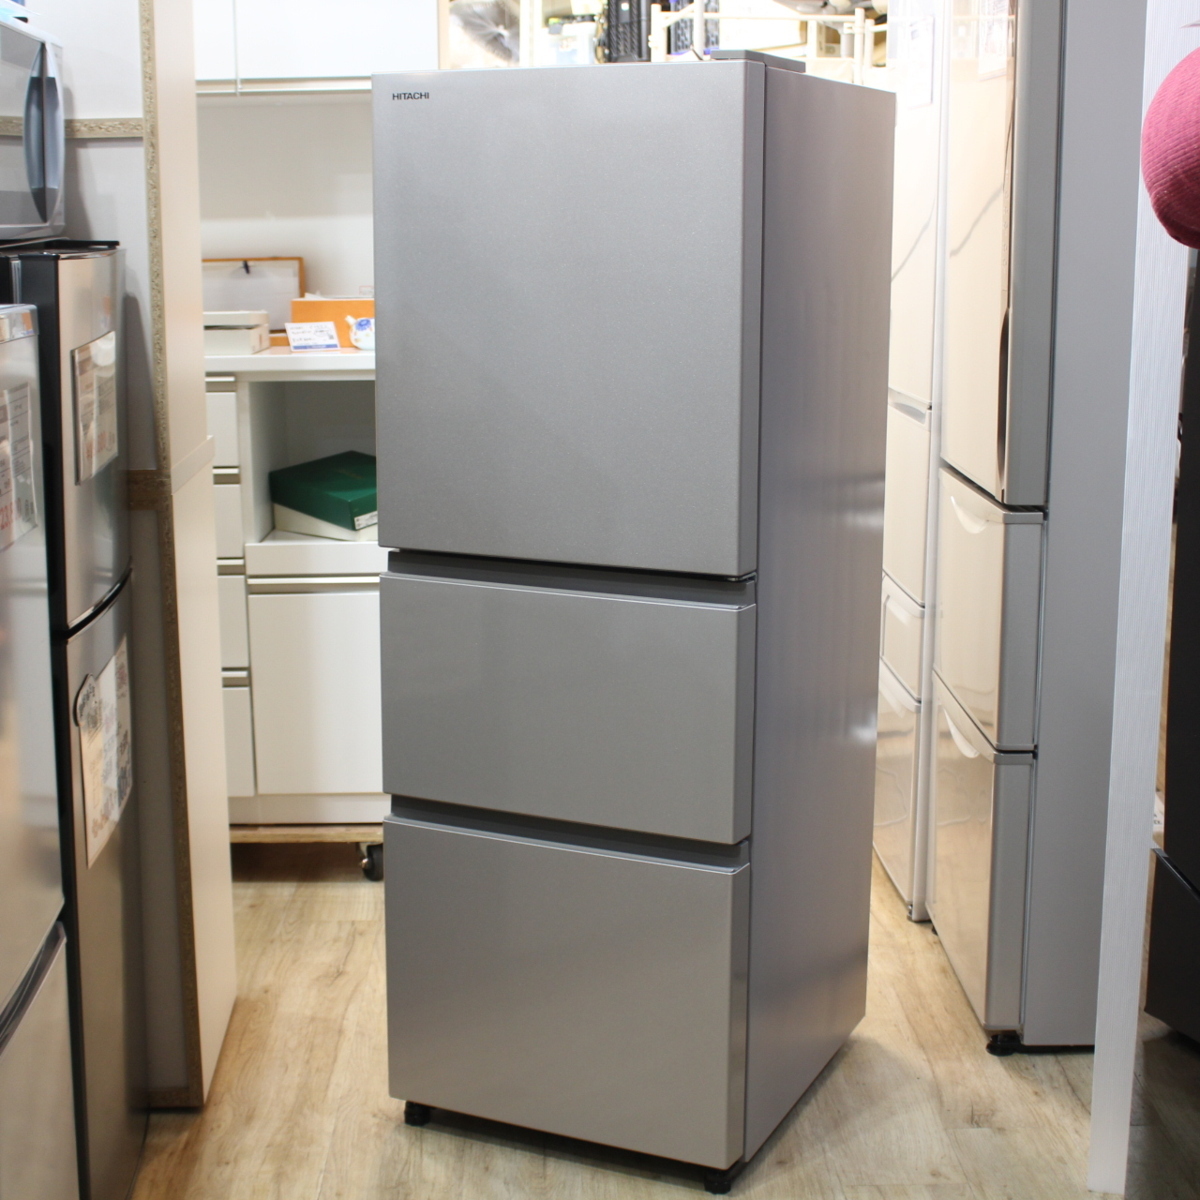 日立 冷蔵庫 265L 3ドア R-27KV-1 2020年製 - 川崎市・横浜市で家具